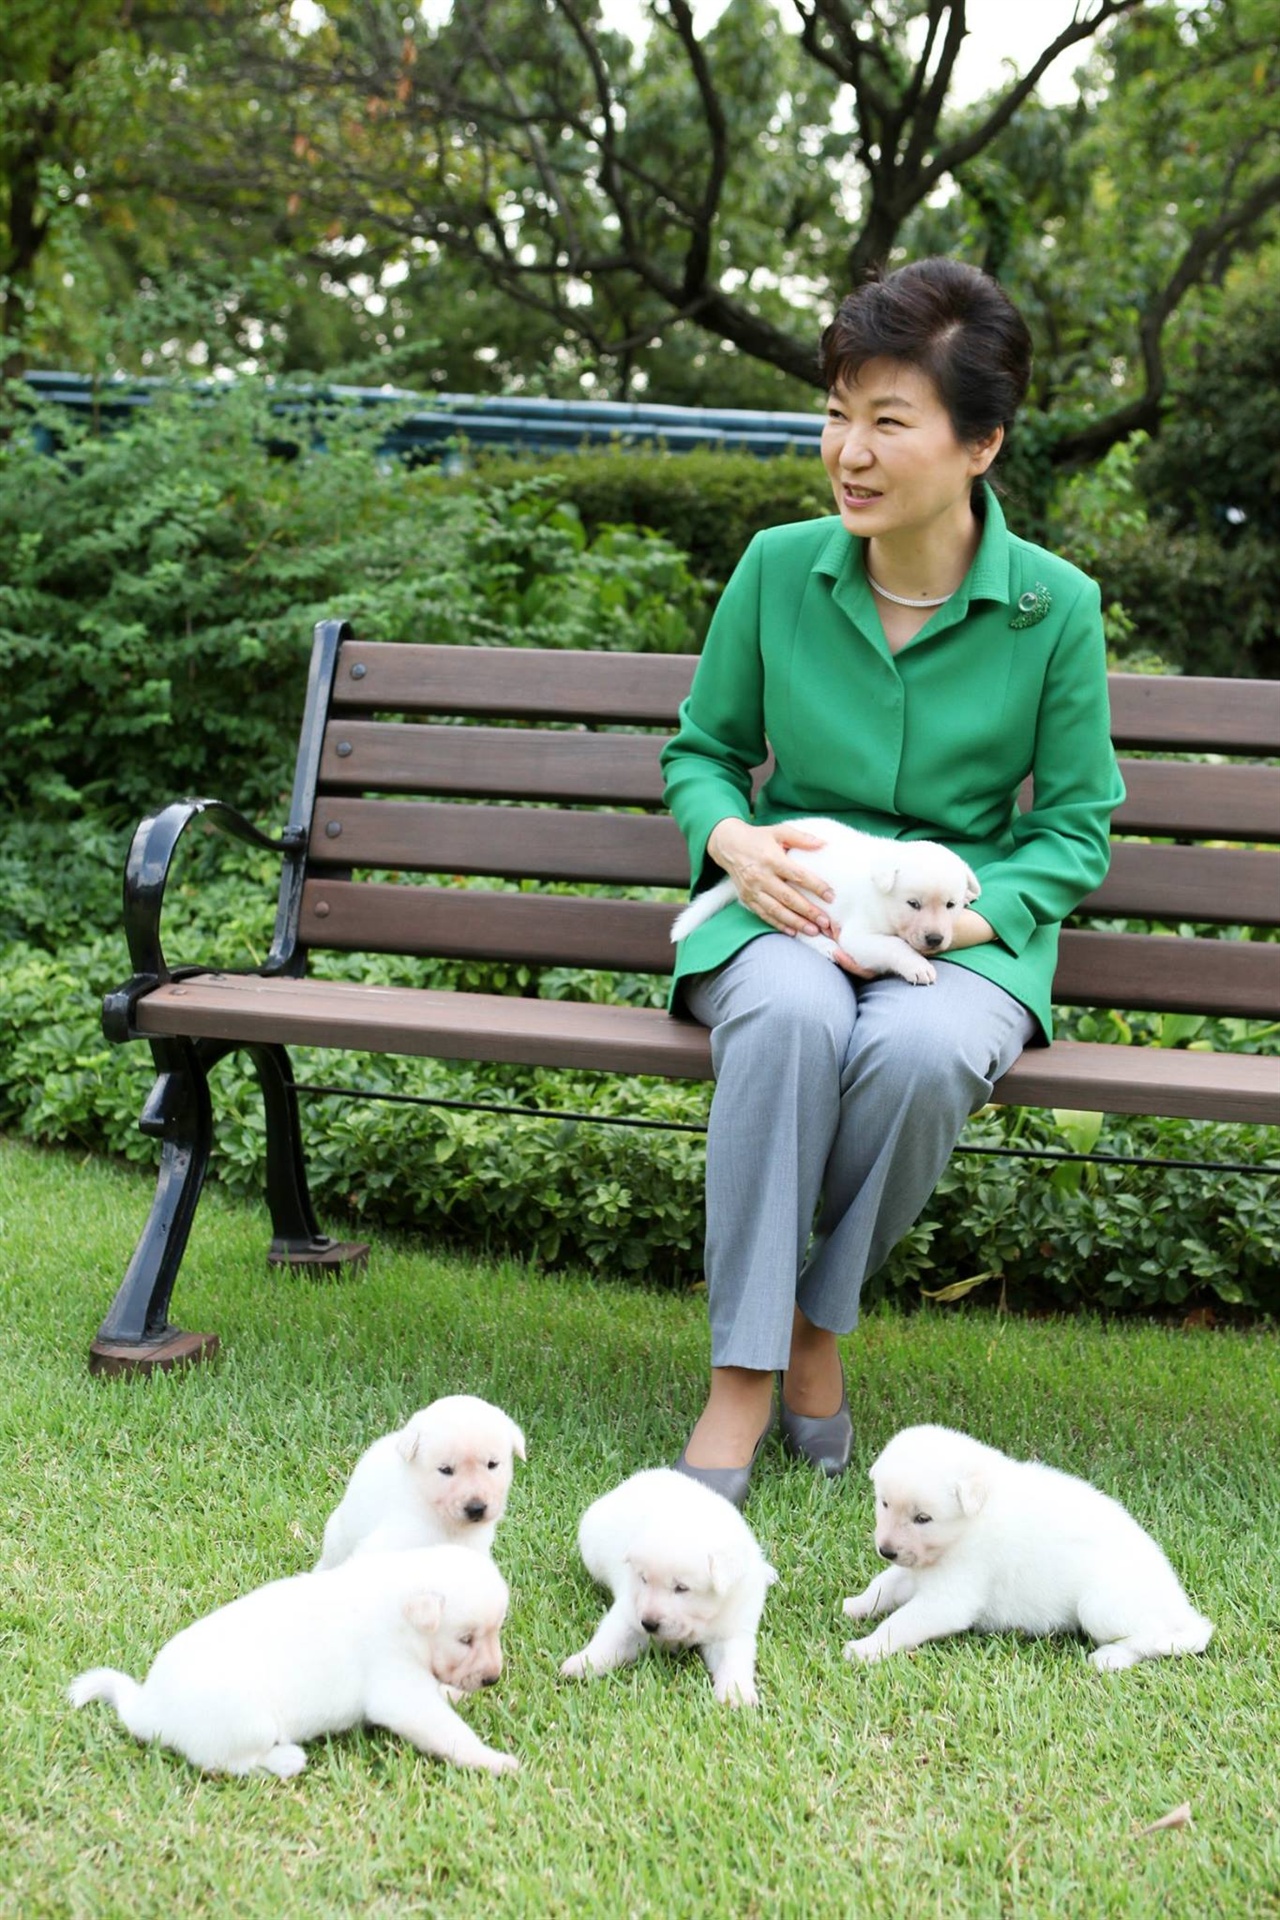 박근혜 대통령이 2015년 9월 페이스북에 올린 사진. 